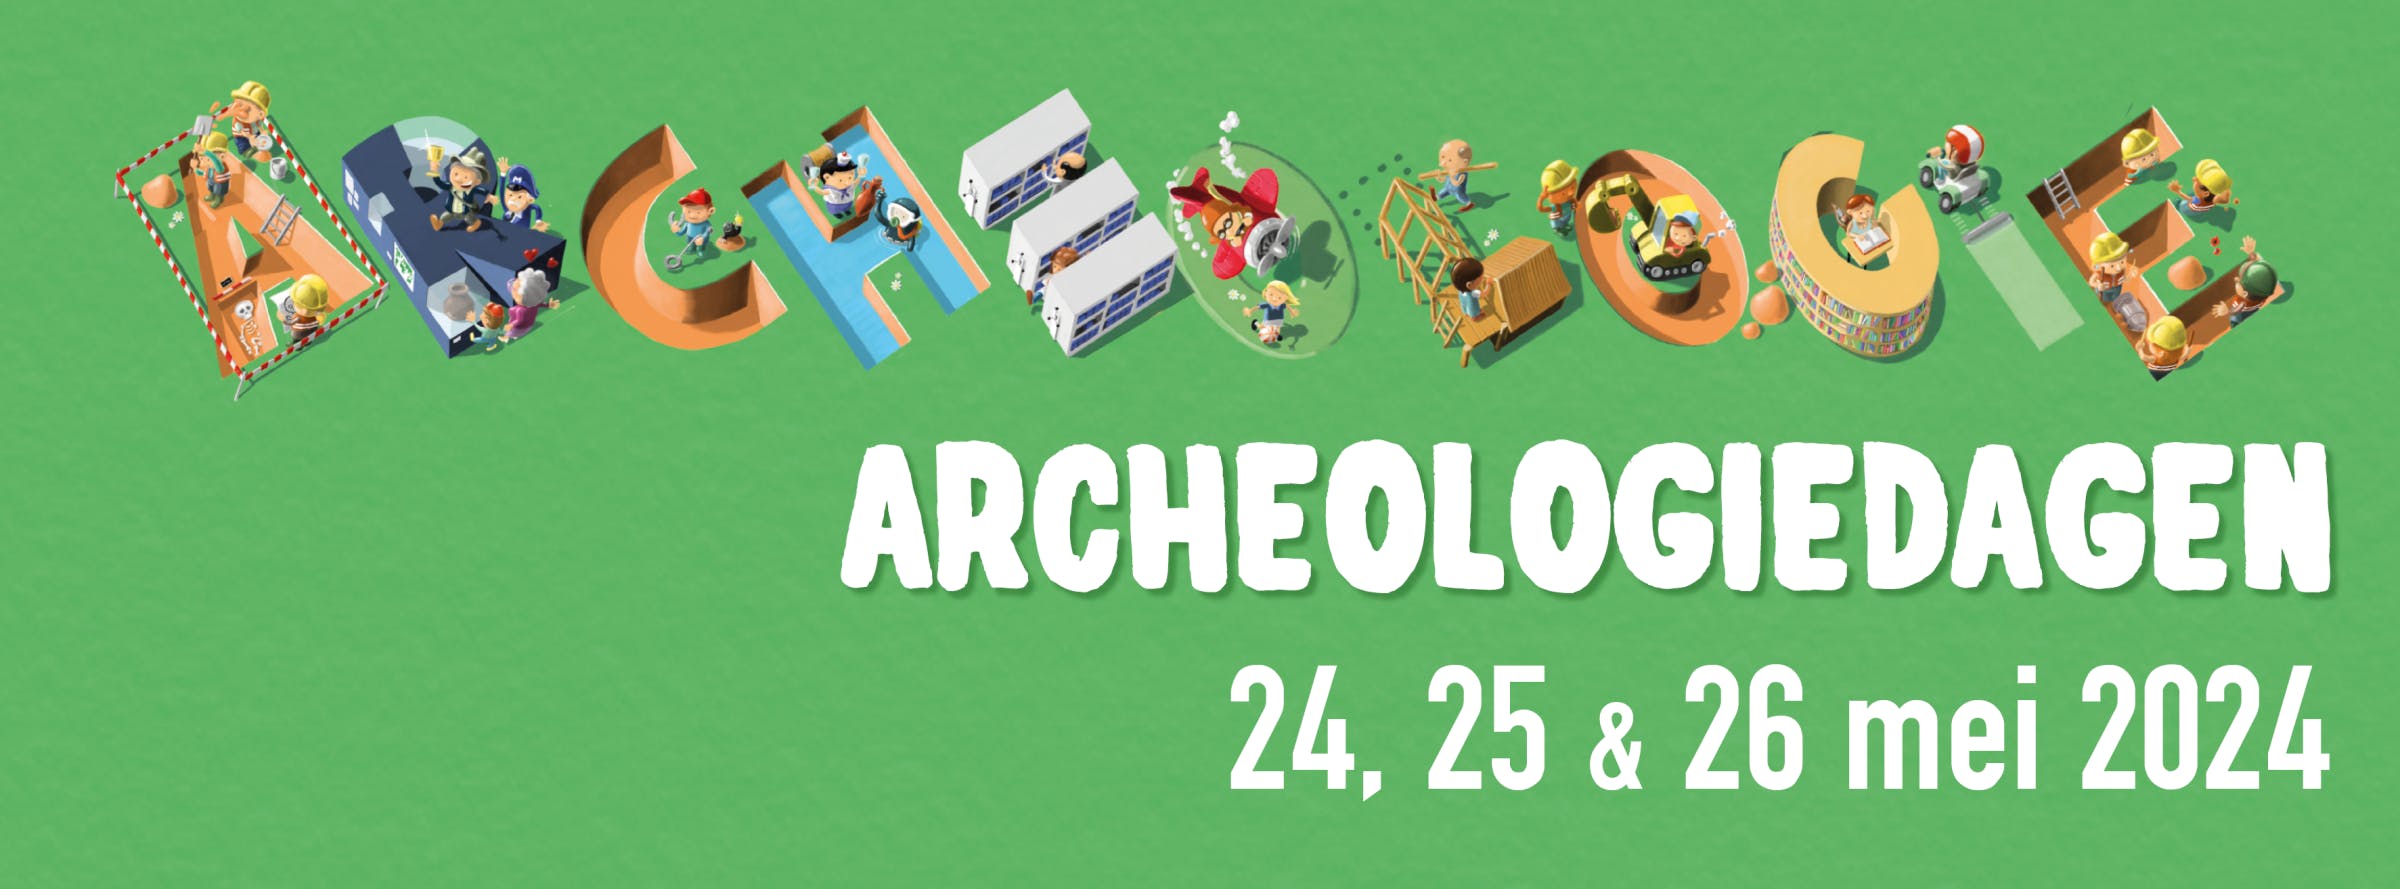 Campagnebeeld Archeologiedagen